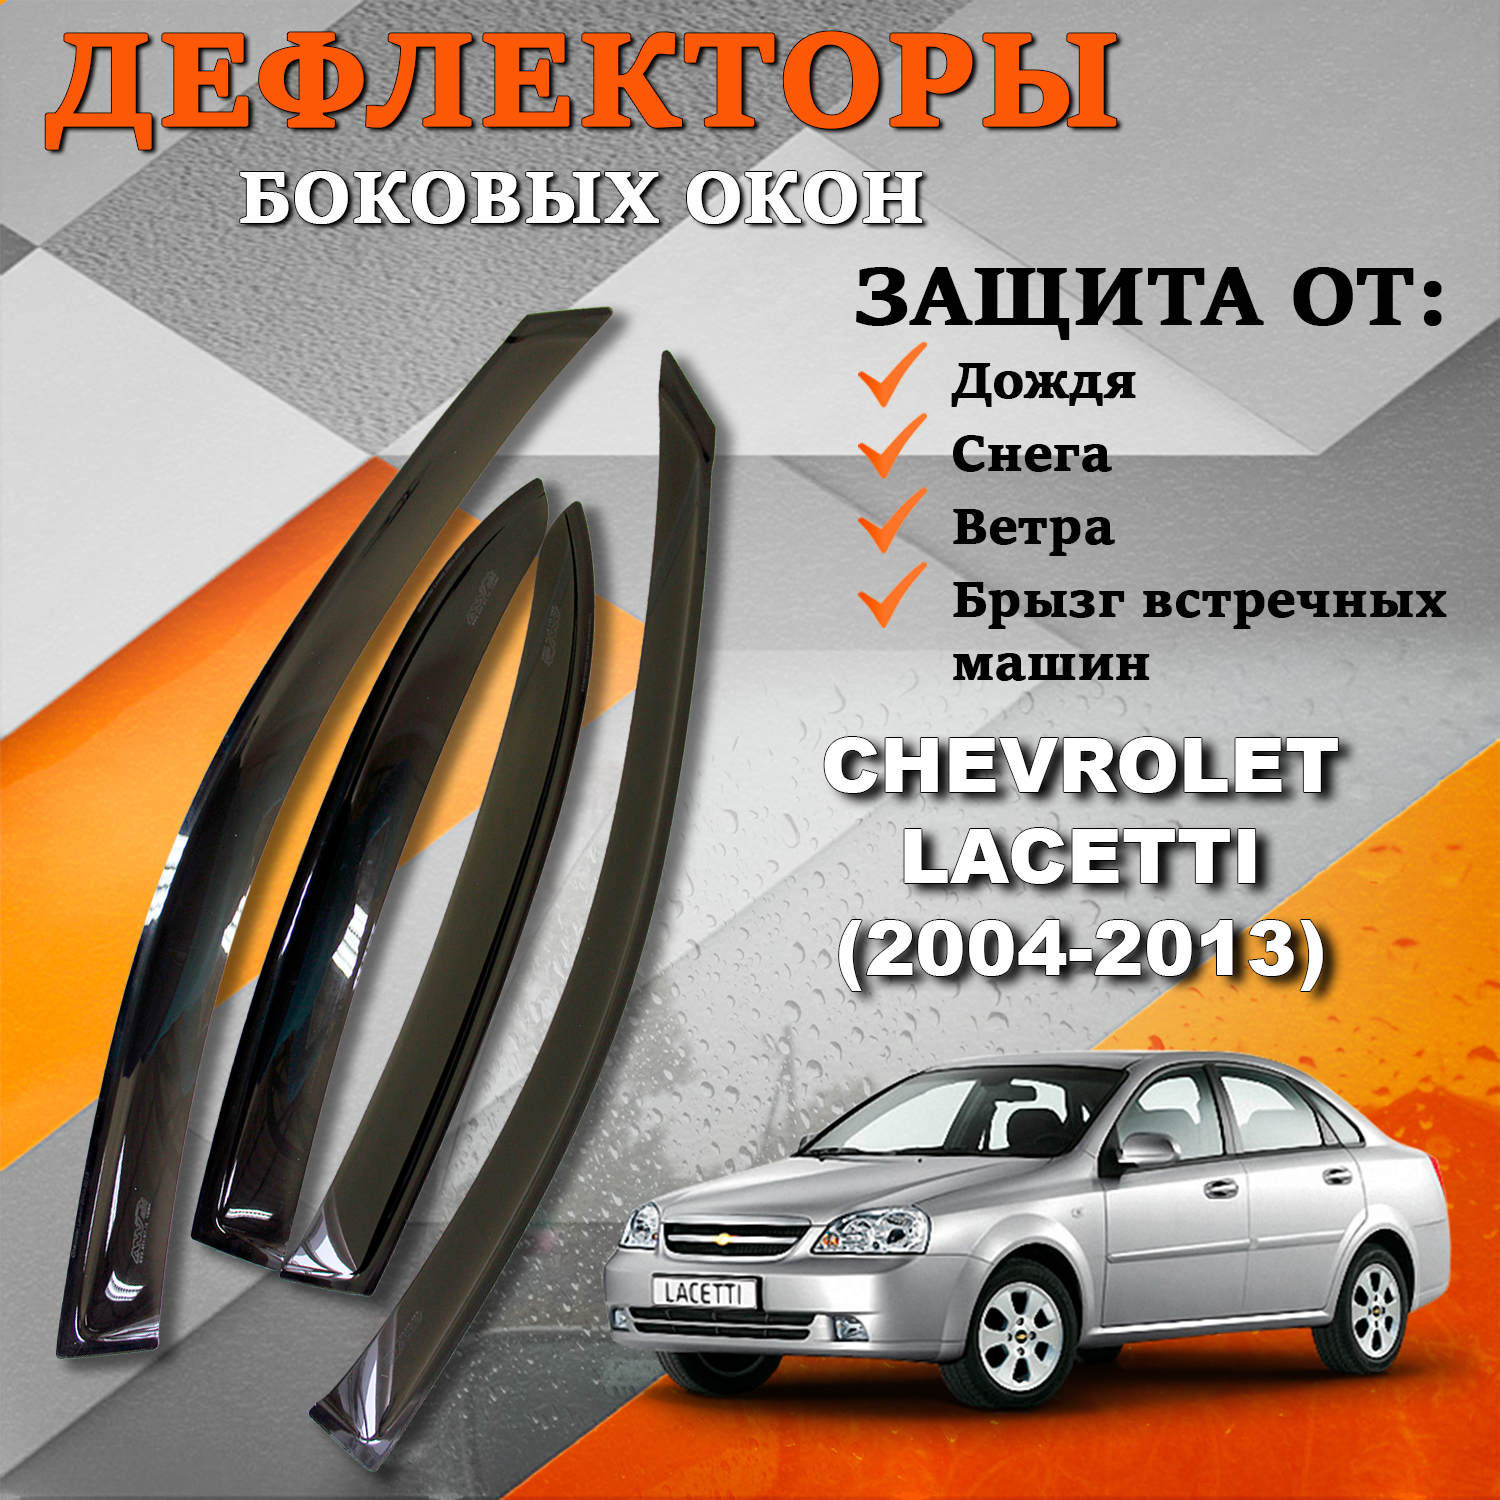 Дефлекторы боковых окон TOROS (Ветровики) на Шевроле Лачетти хэтчбек (2004-2013)